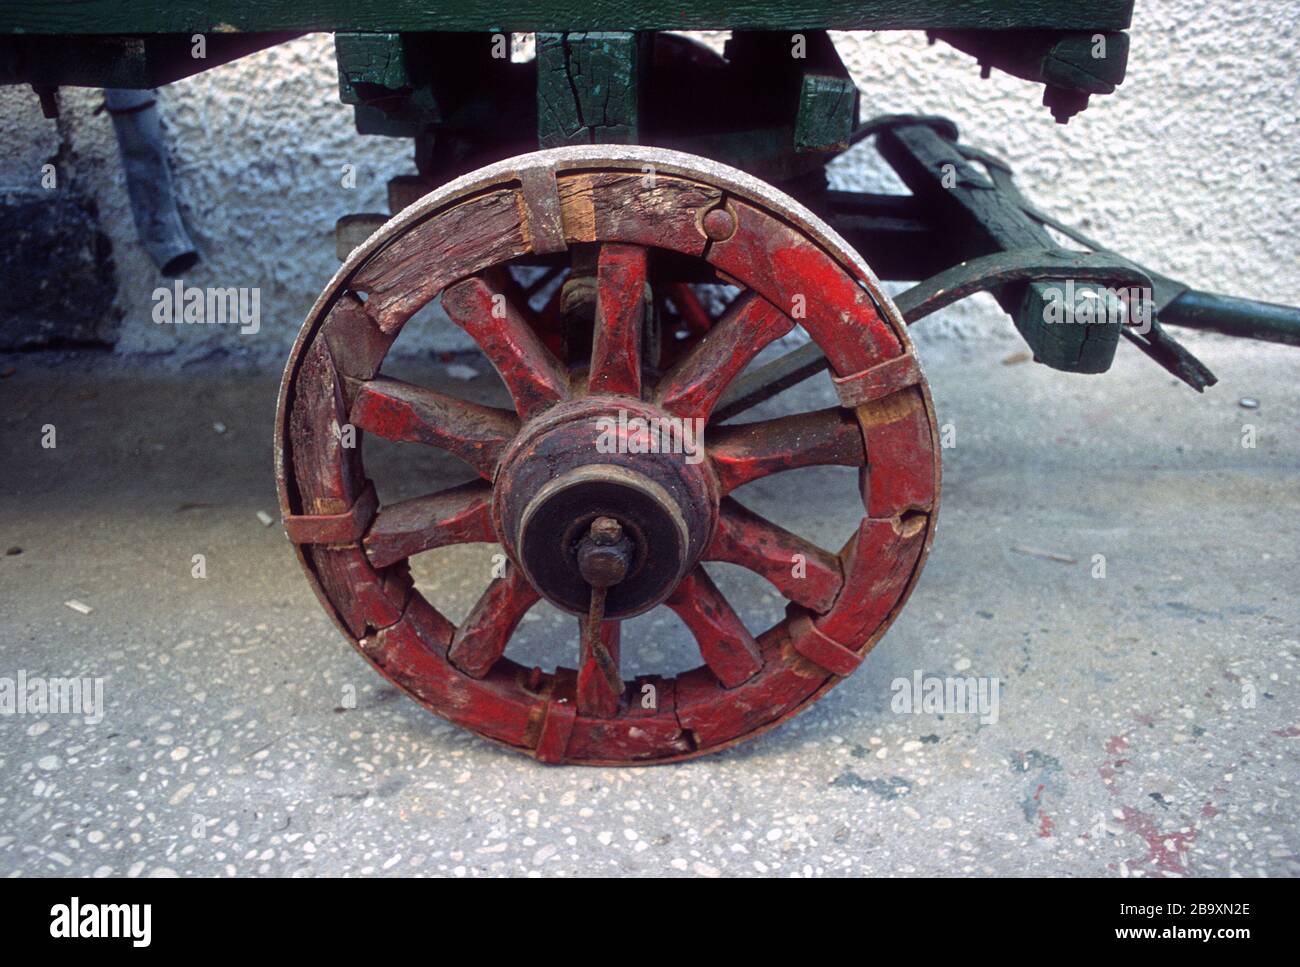 Una ruota per carrello in legno dipinta a mano con un pneumatico in ferro su un rimorchio rustico a Paxos, Grecia Foto Stock